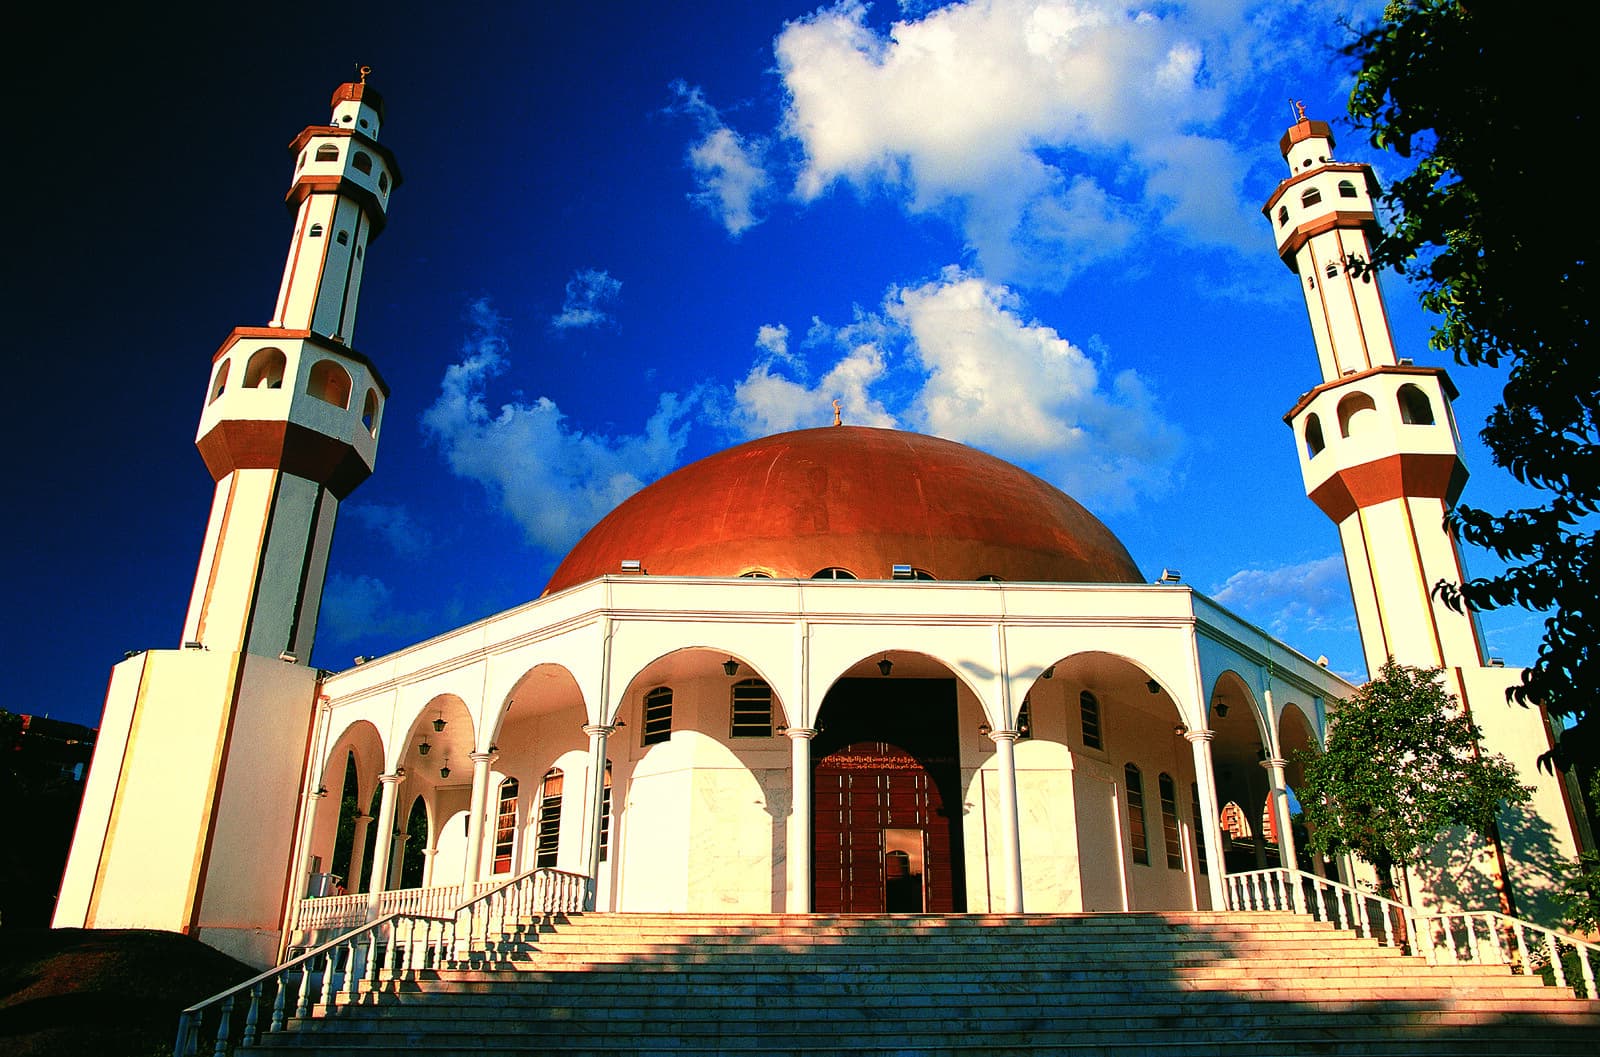 Mesquita Omar Ibn Al-Khatab